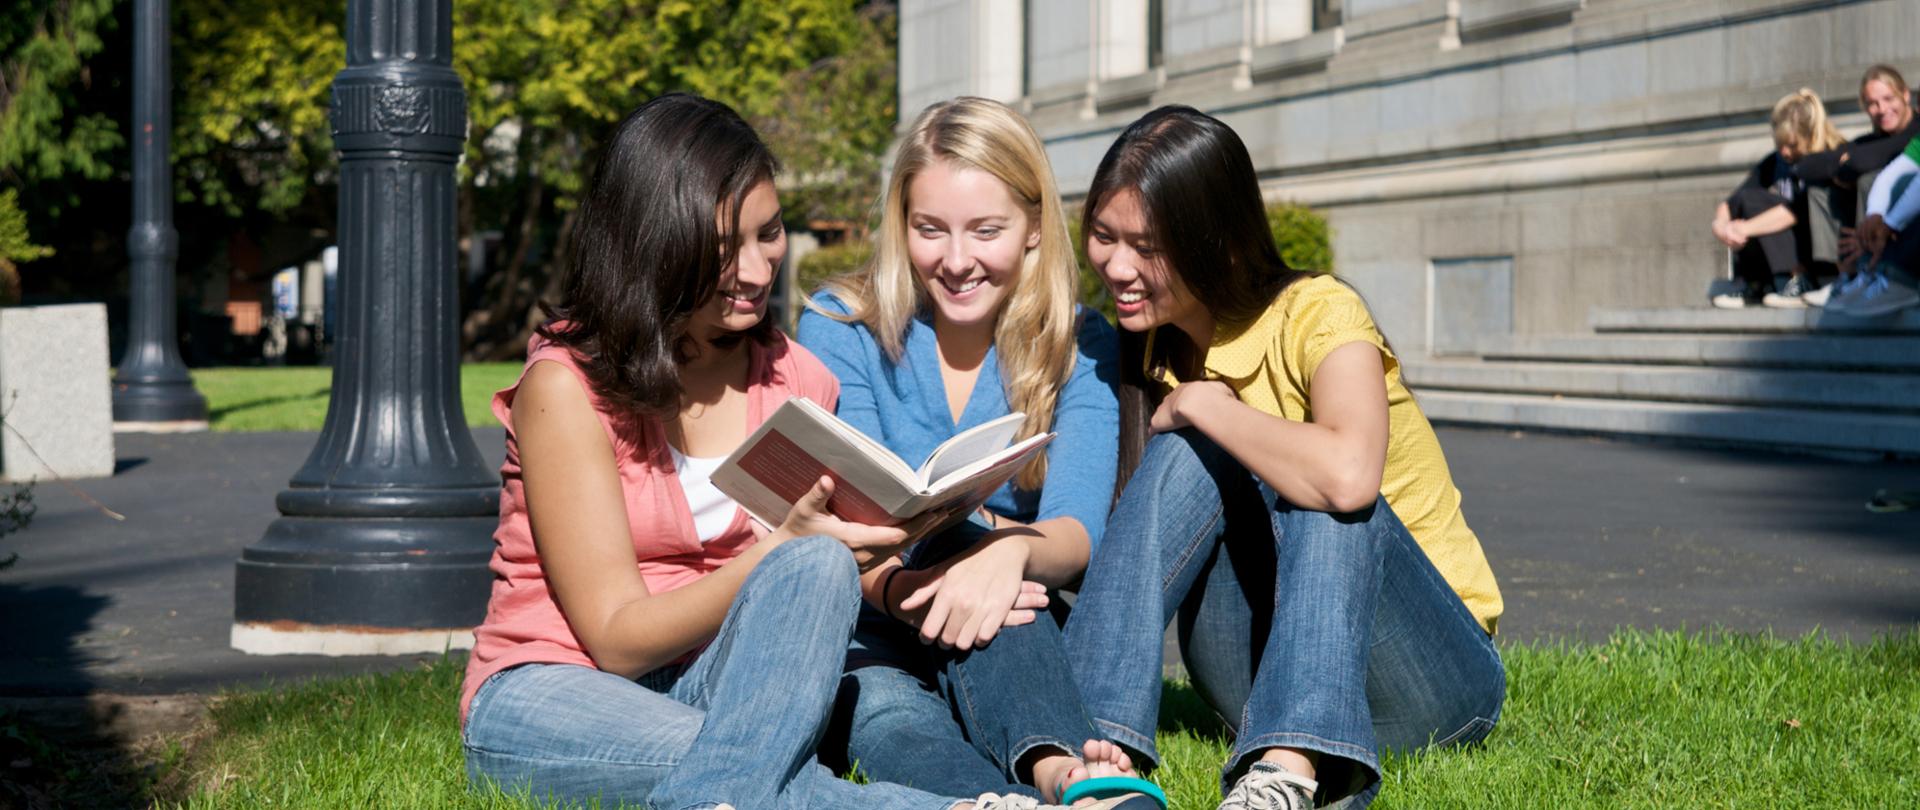 Trzy młode osoby siedzą na trawniku pod budynkiem uczelni.